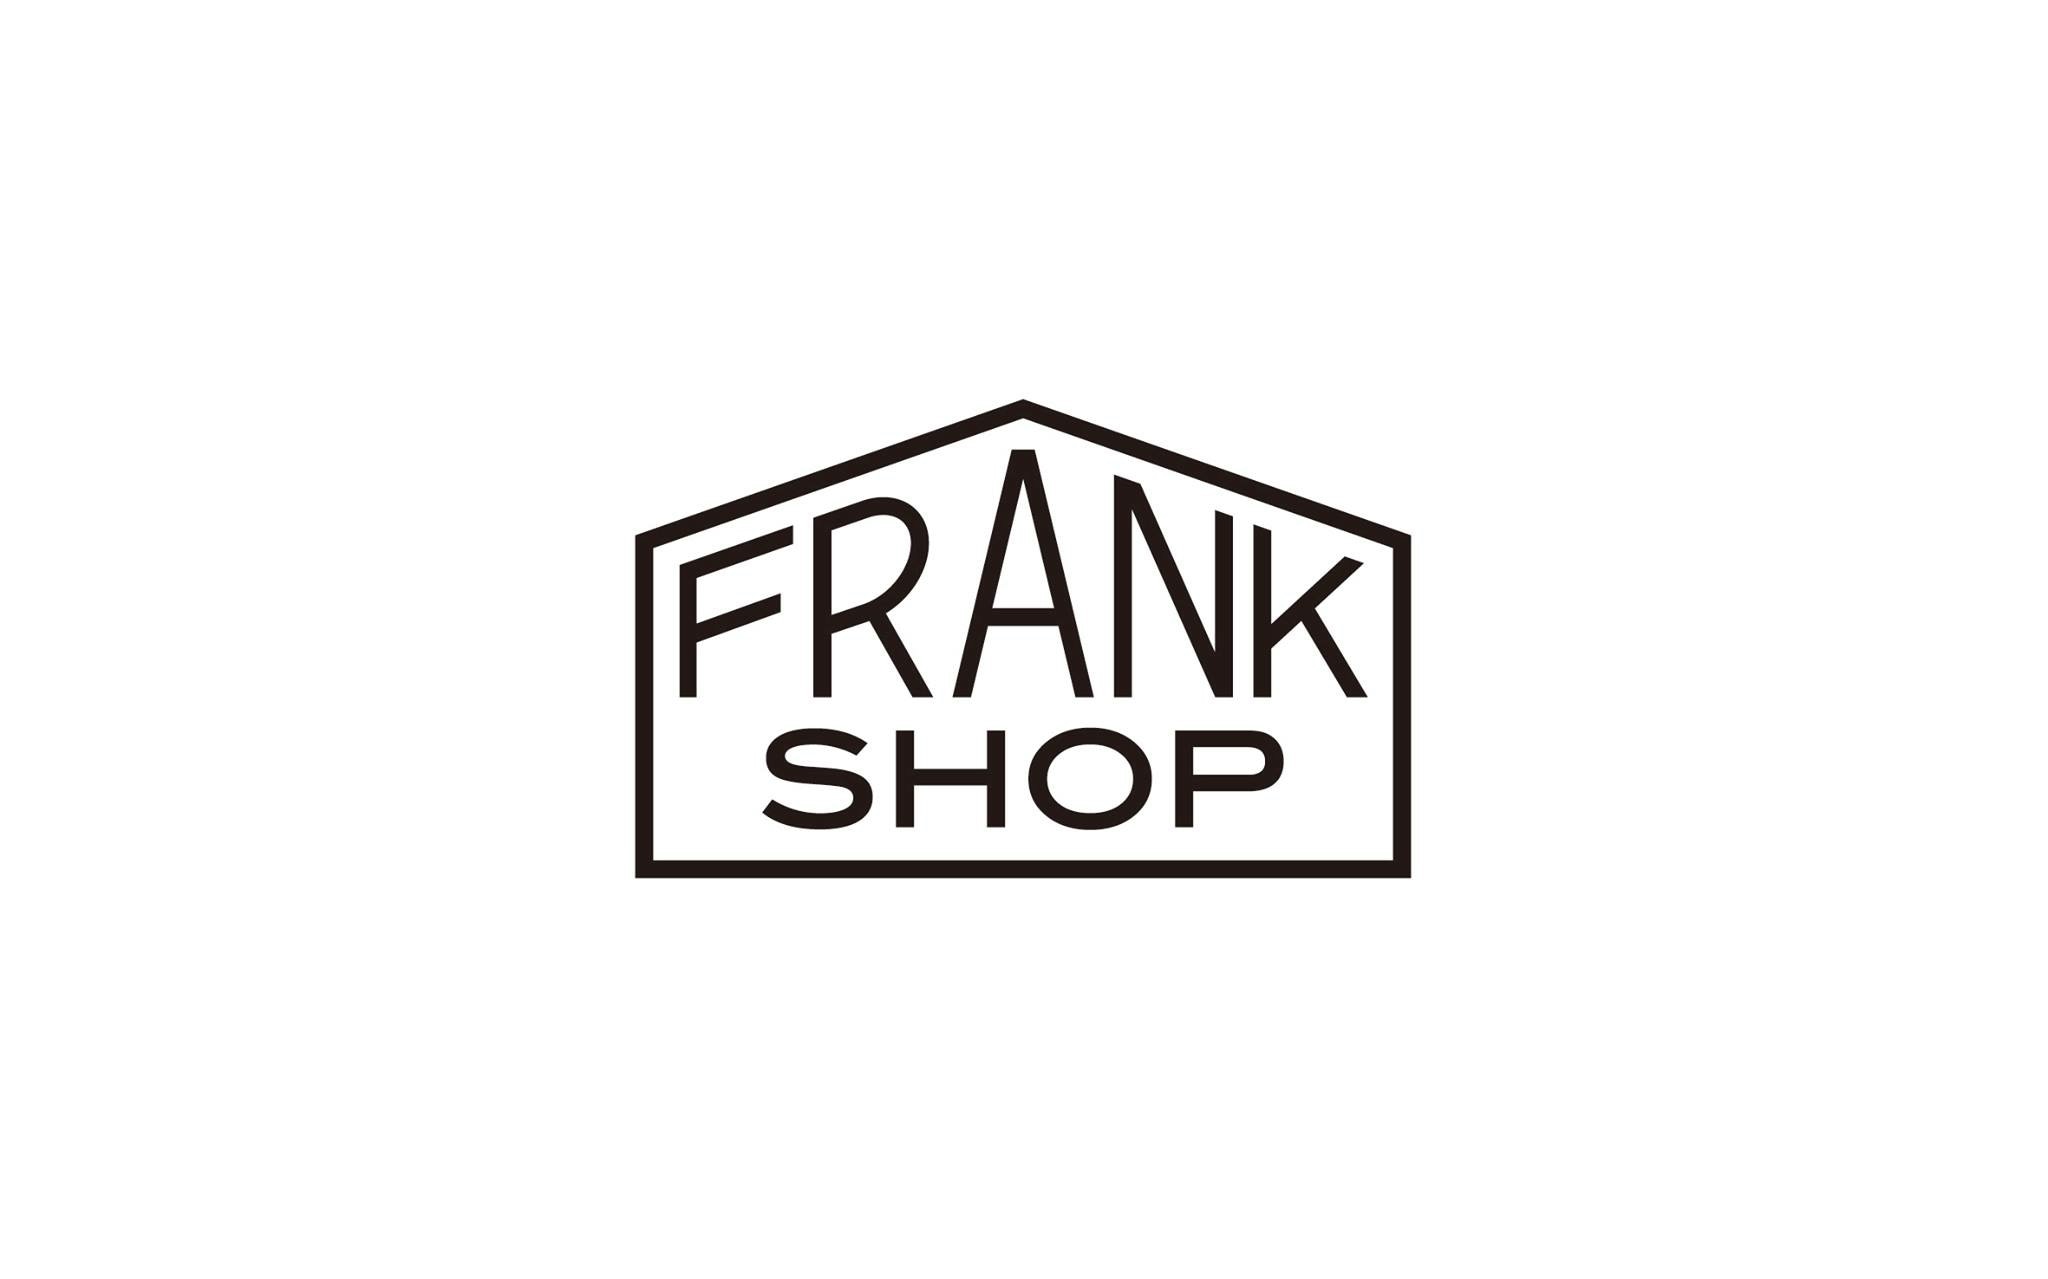 FRANK SHOP フランクショップ